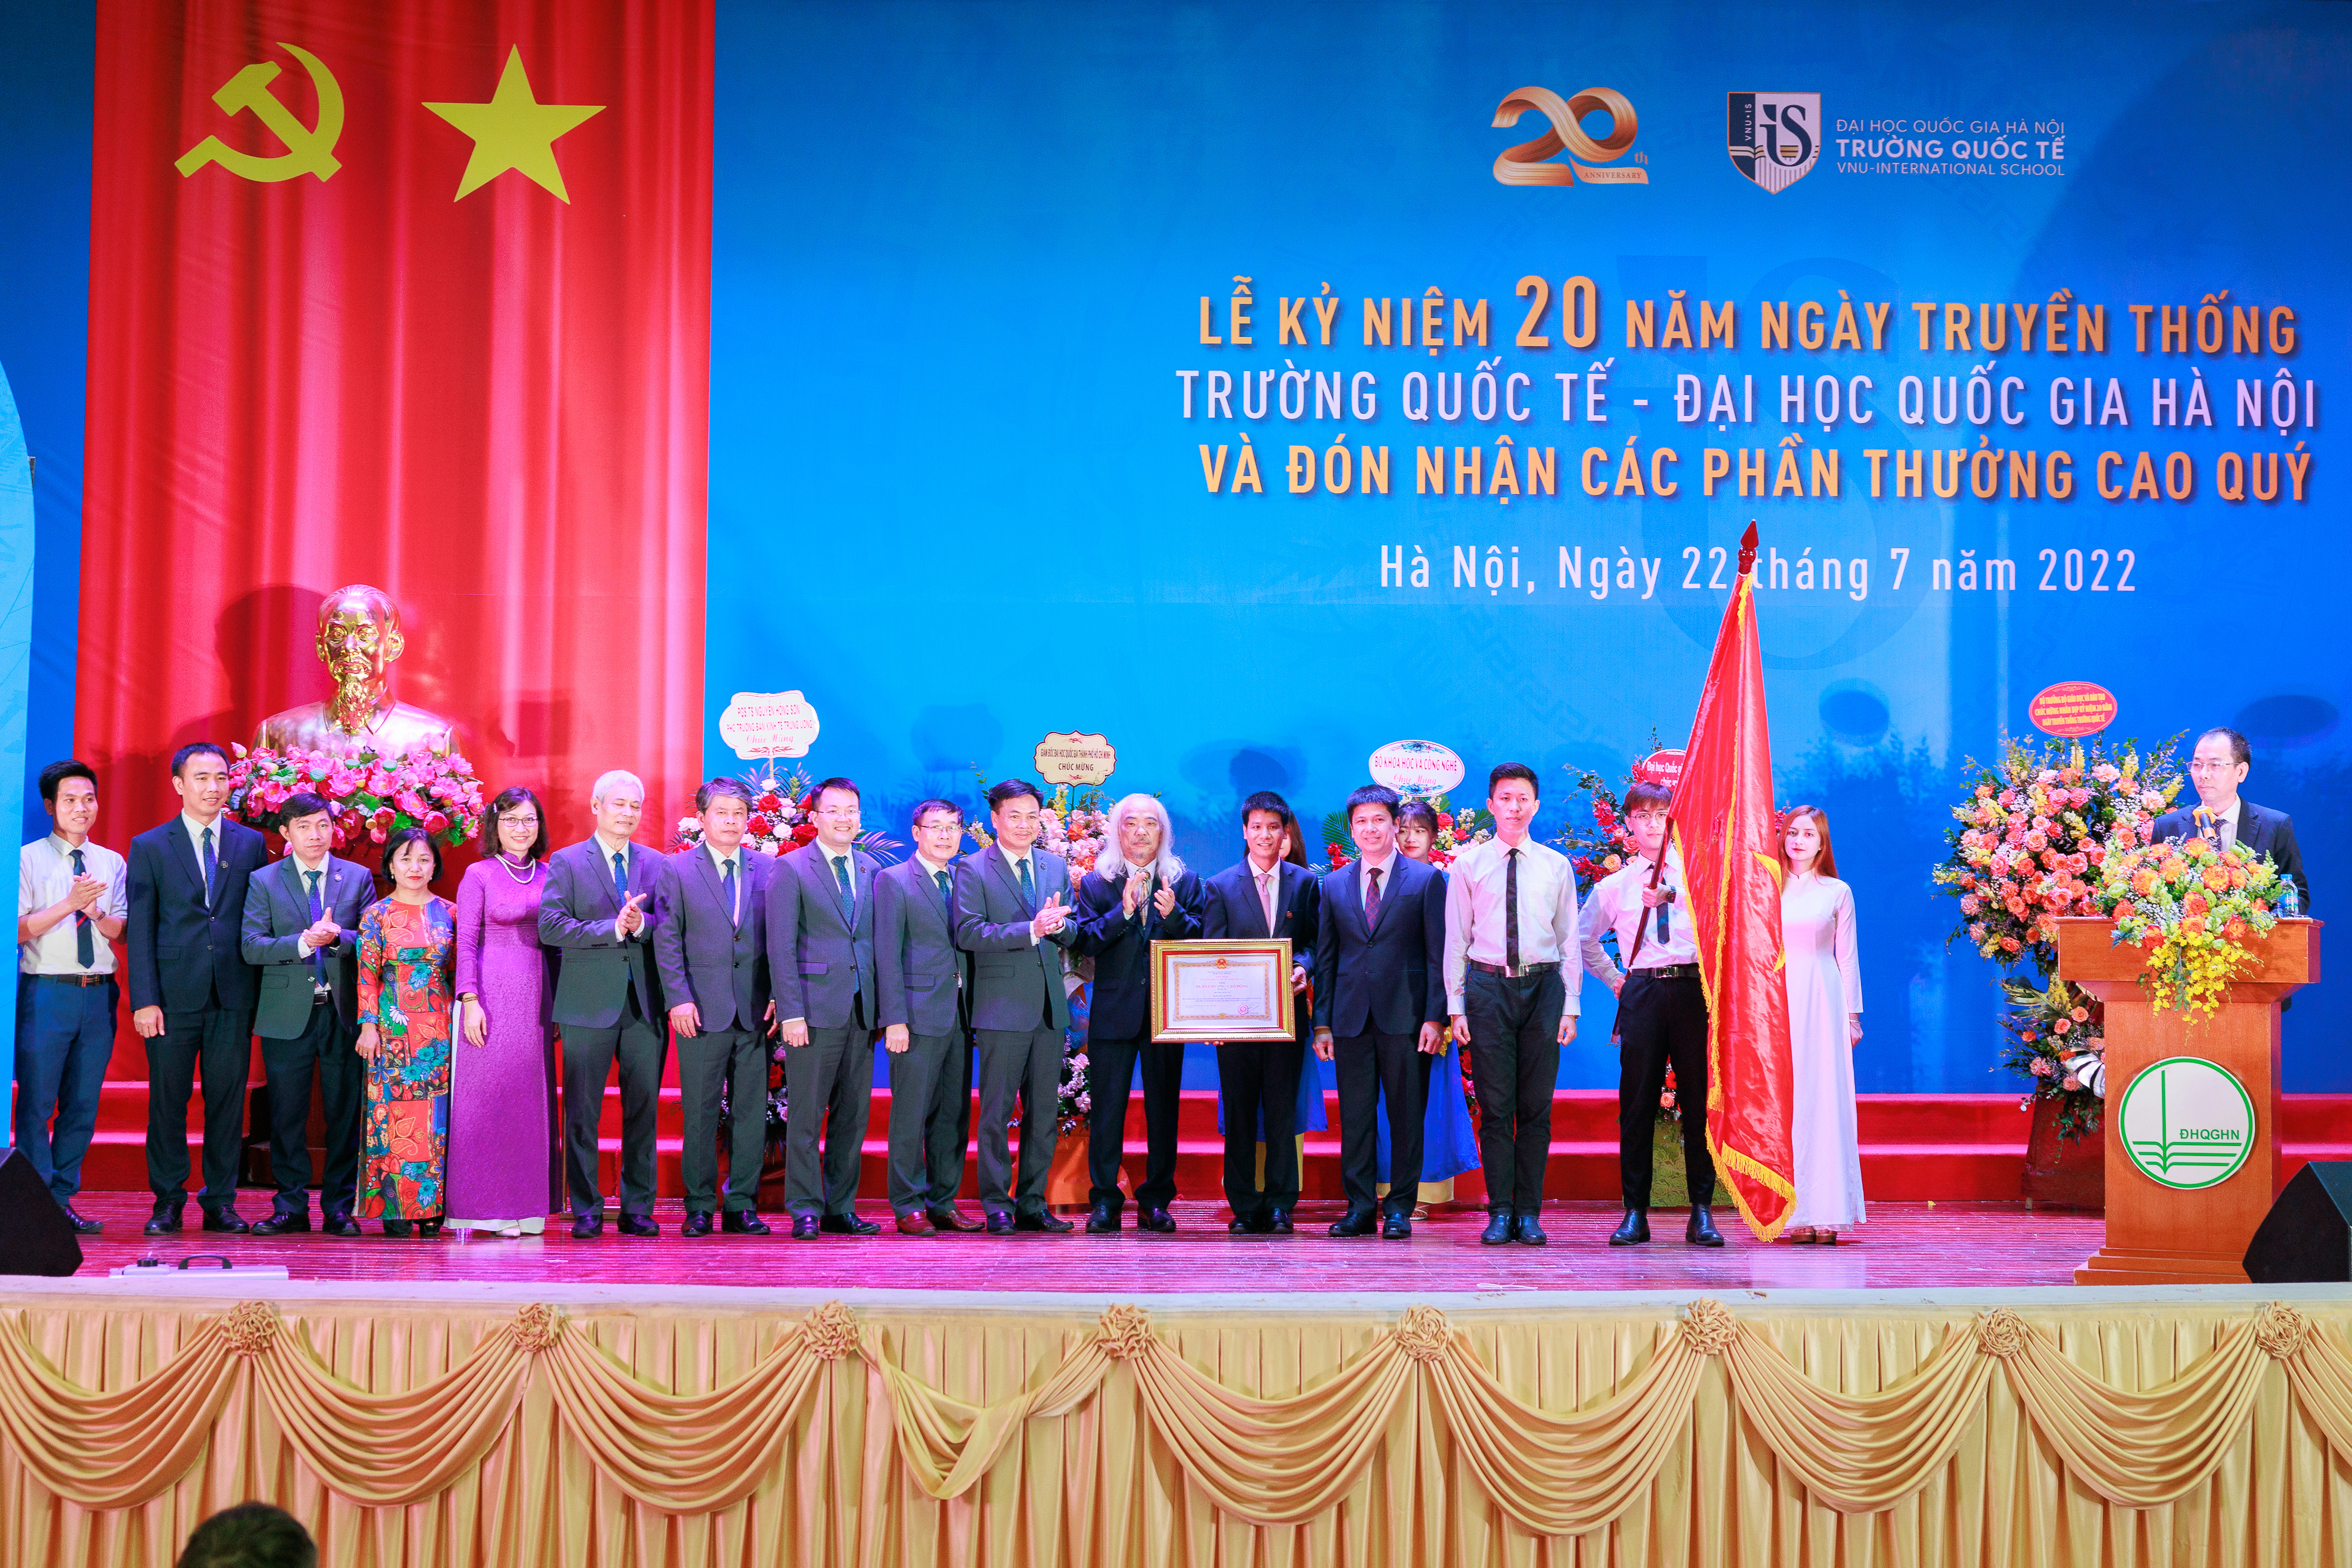 PGS.TS Nguyễn Hiệu, Phó Giám đốc ĐH quốc gia Hà Nội thừa ủy quyền của Chủ tịch nước trao tặng Huân chương cho lãnh đạo nhà trường